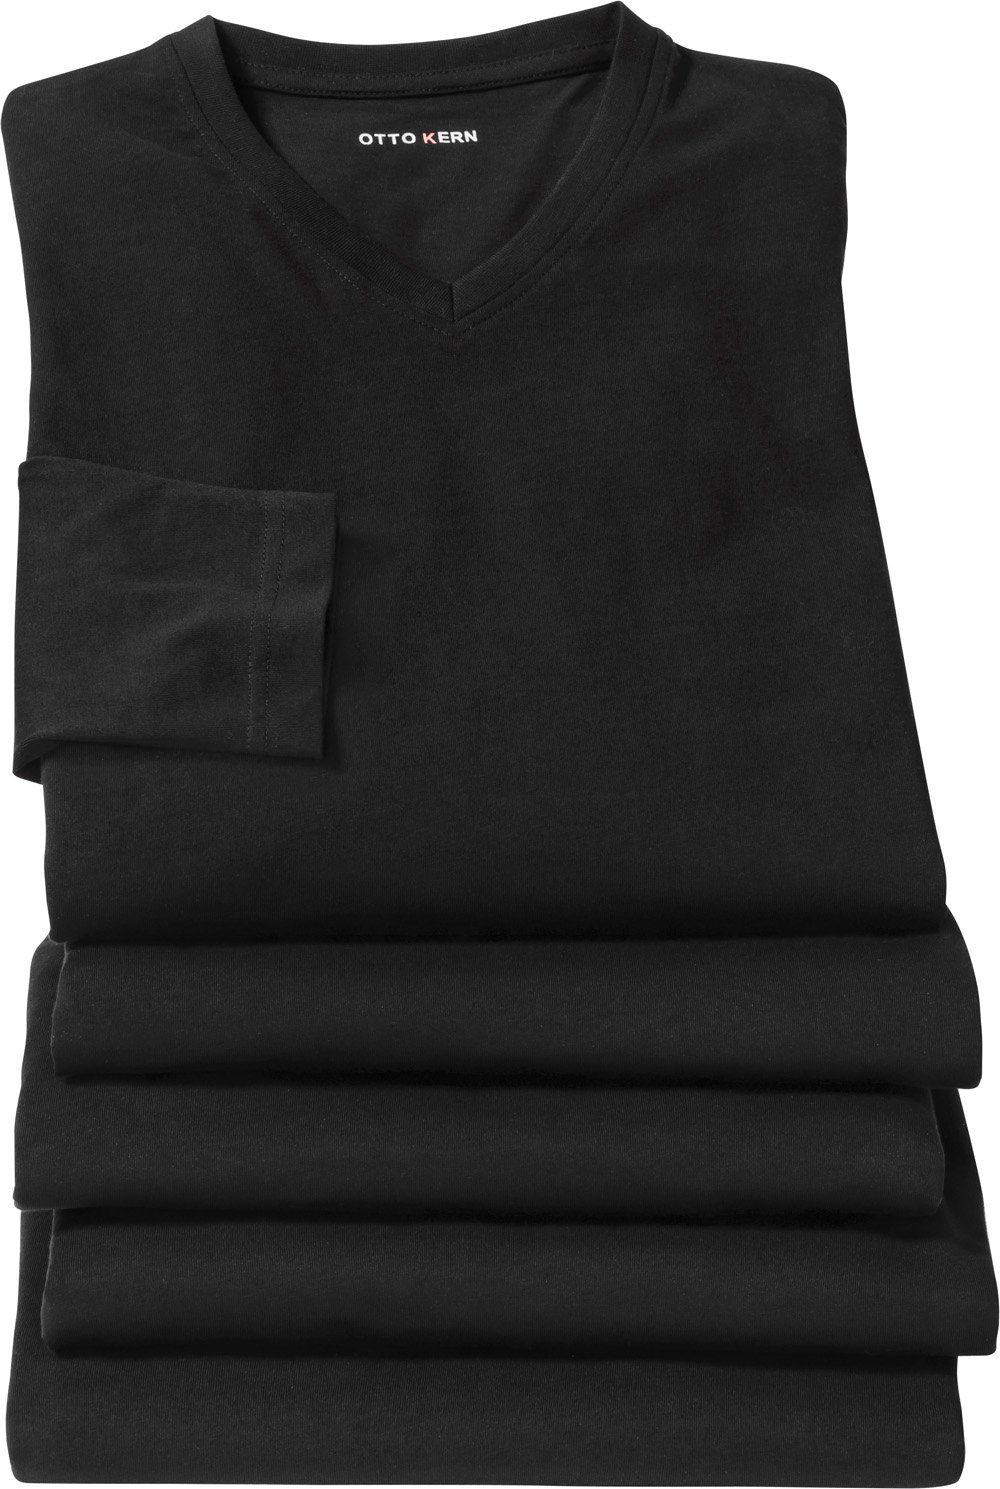 Langarmshirt (5er-Pack) Otto aus schwarz Kern Baumwolle formstabiler Kern 100% hautsympathischer und